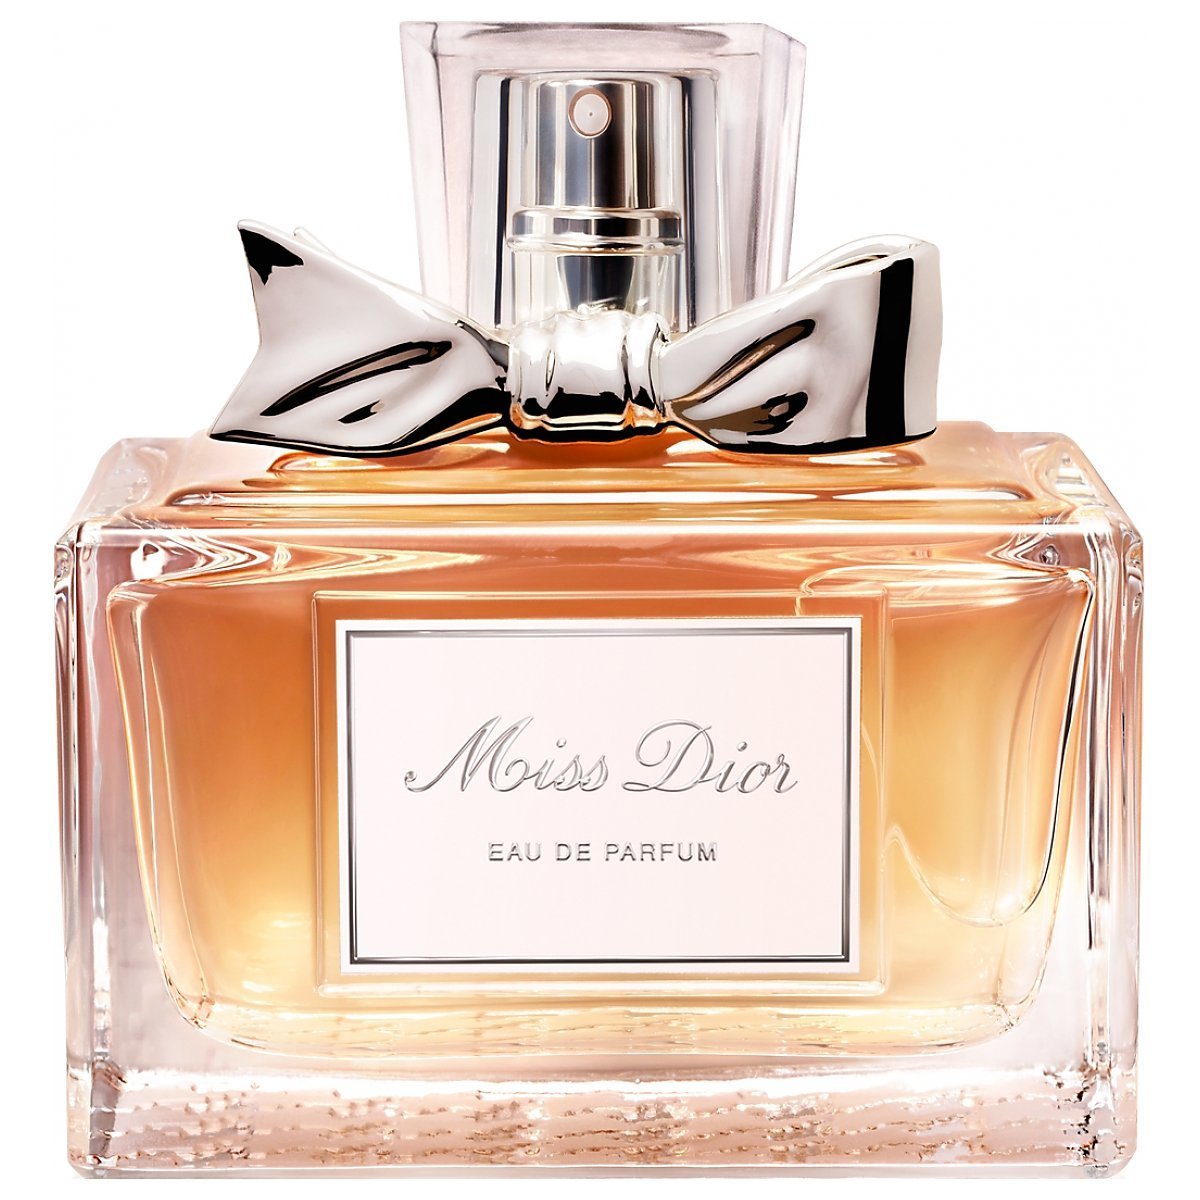 Miss Dior Perfume Price : Perfume Miss Dior Cherie Eau De Parfum